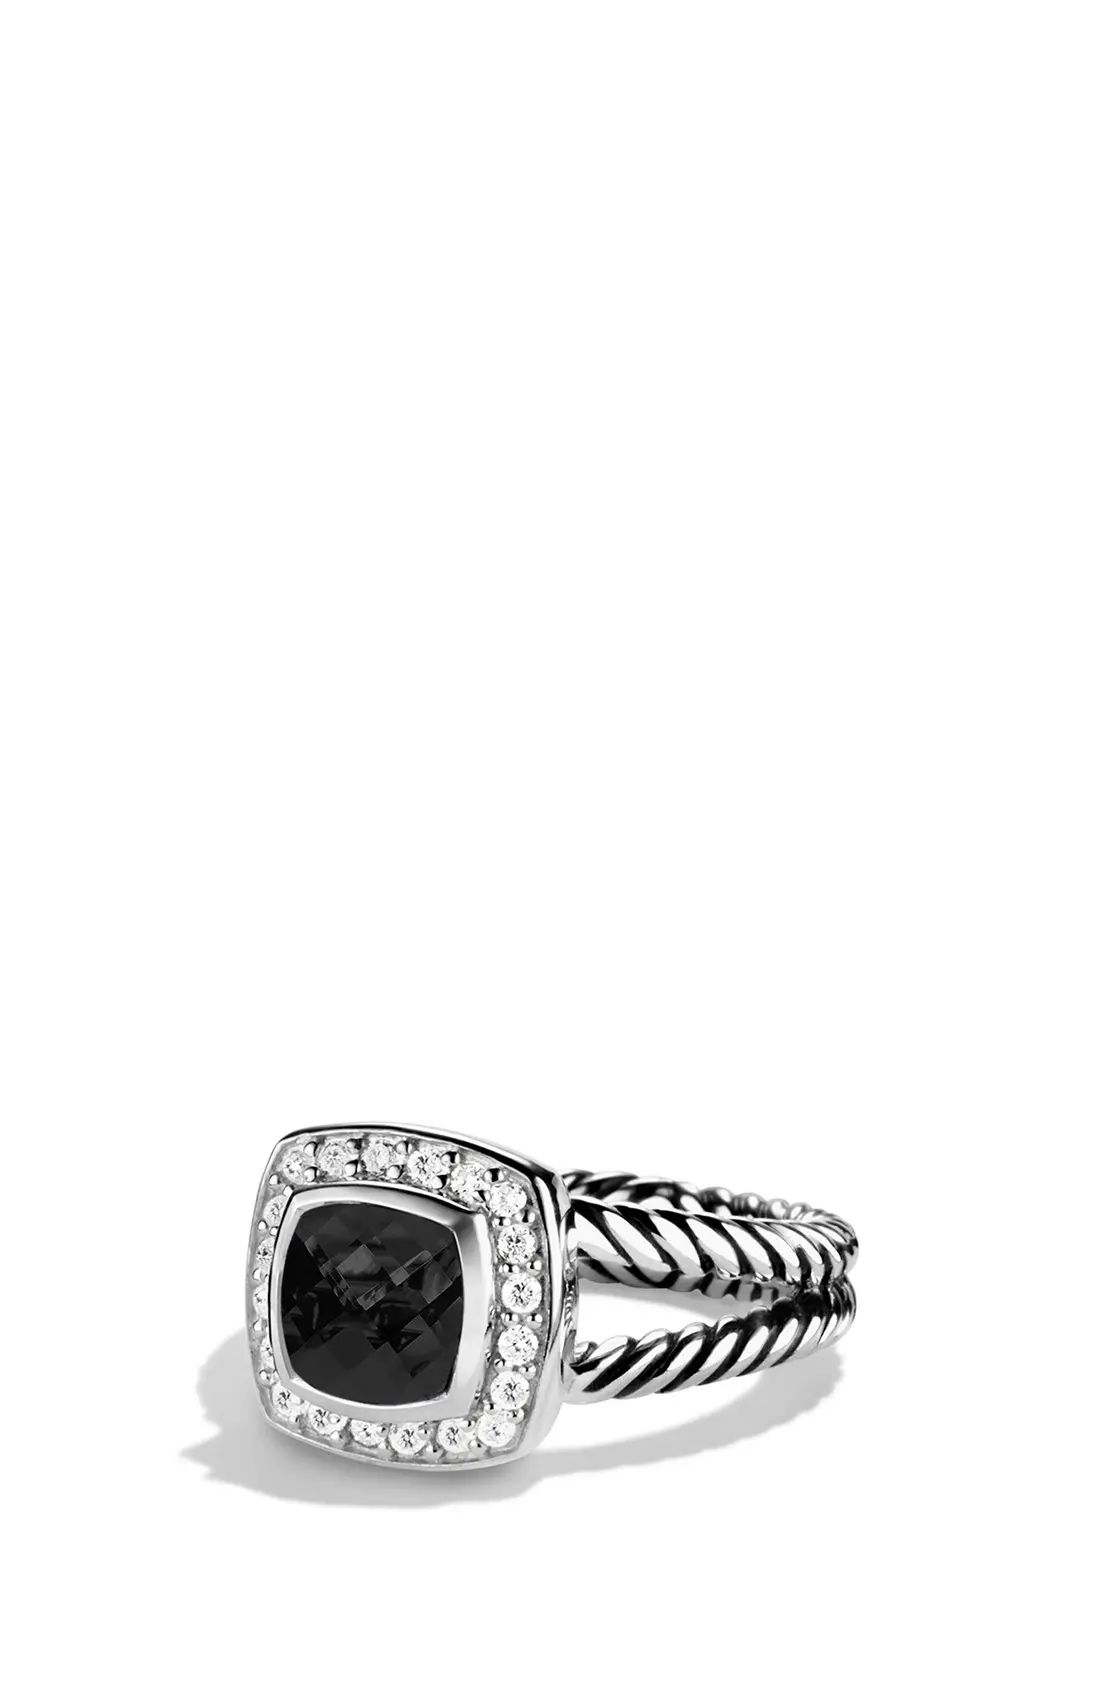 David Yurman 'Albion' Petite Ring with Semiprecious Stone & Diamonds | Nordstrom